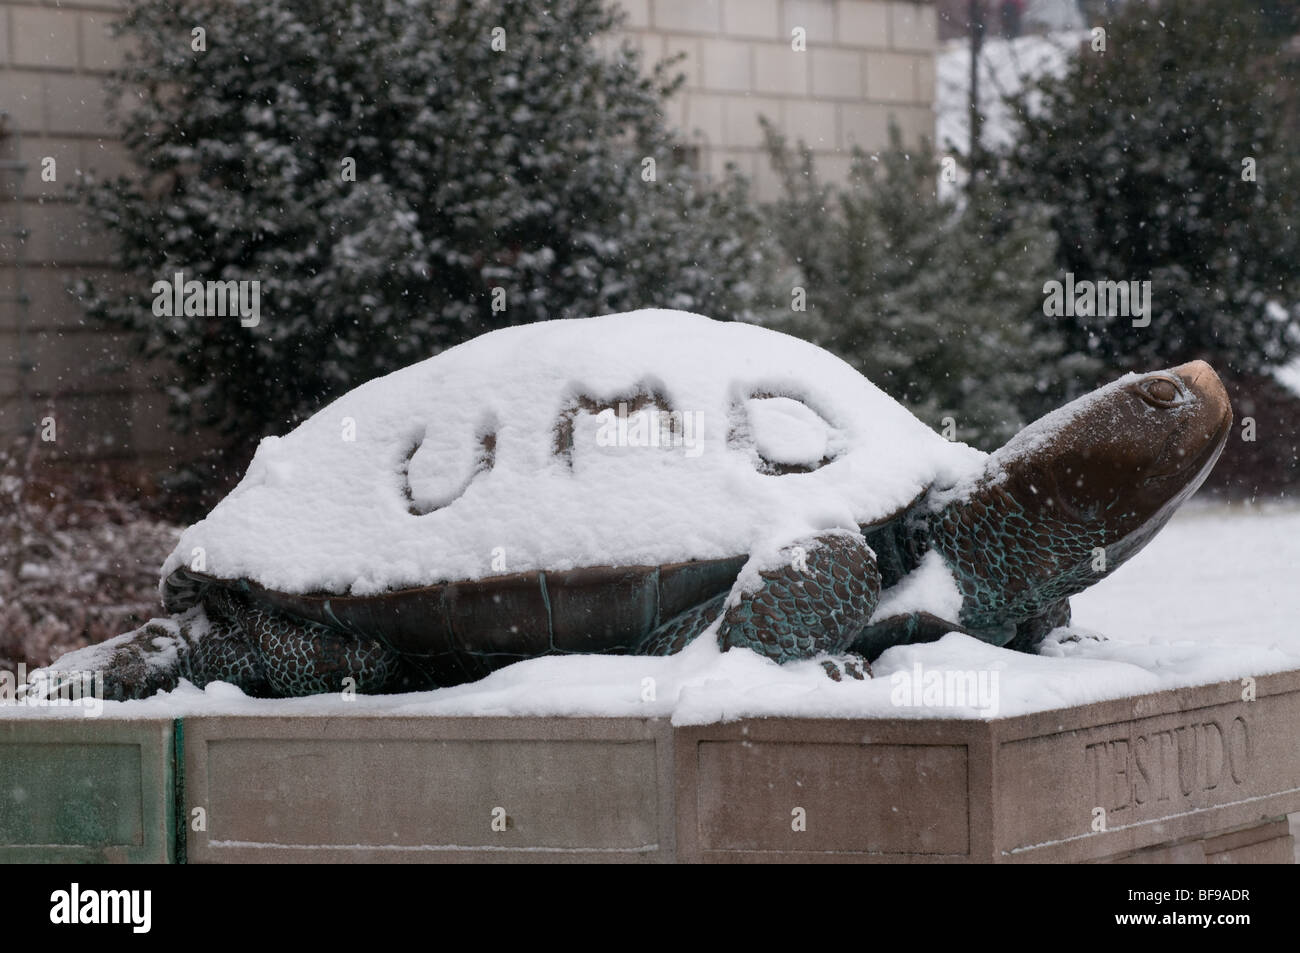 Université du Maryland mascot testudo dans la neige Banque D'Images